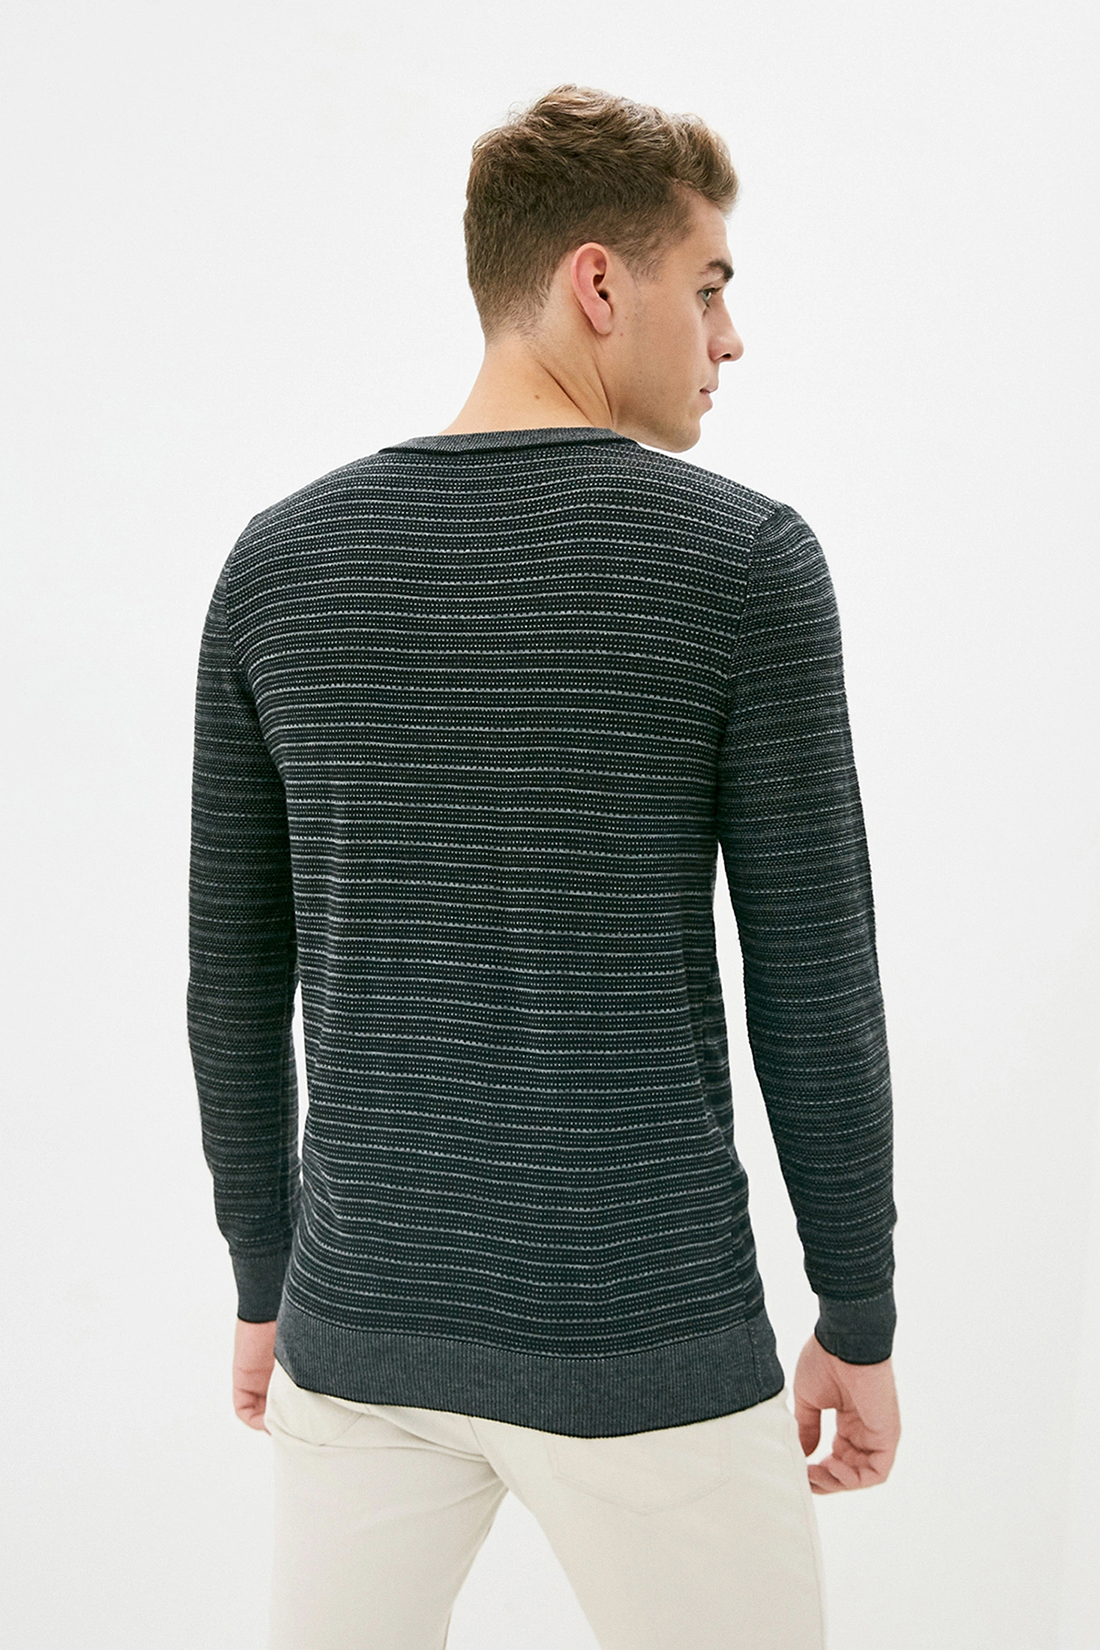 Пуловер с рельефными полосками (арт. baon B639502), размер XL, цвет белый Пуловер с рельефными полосками (арт. baon B639502) - фото 2